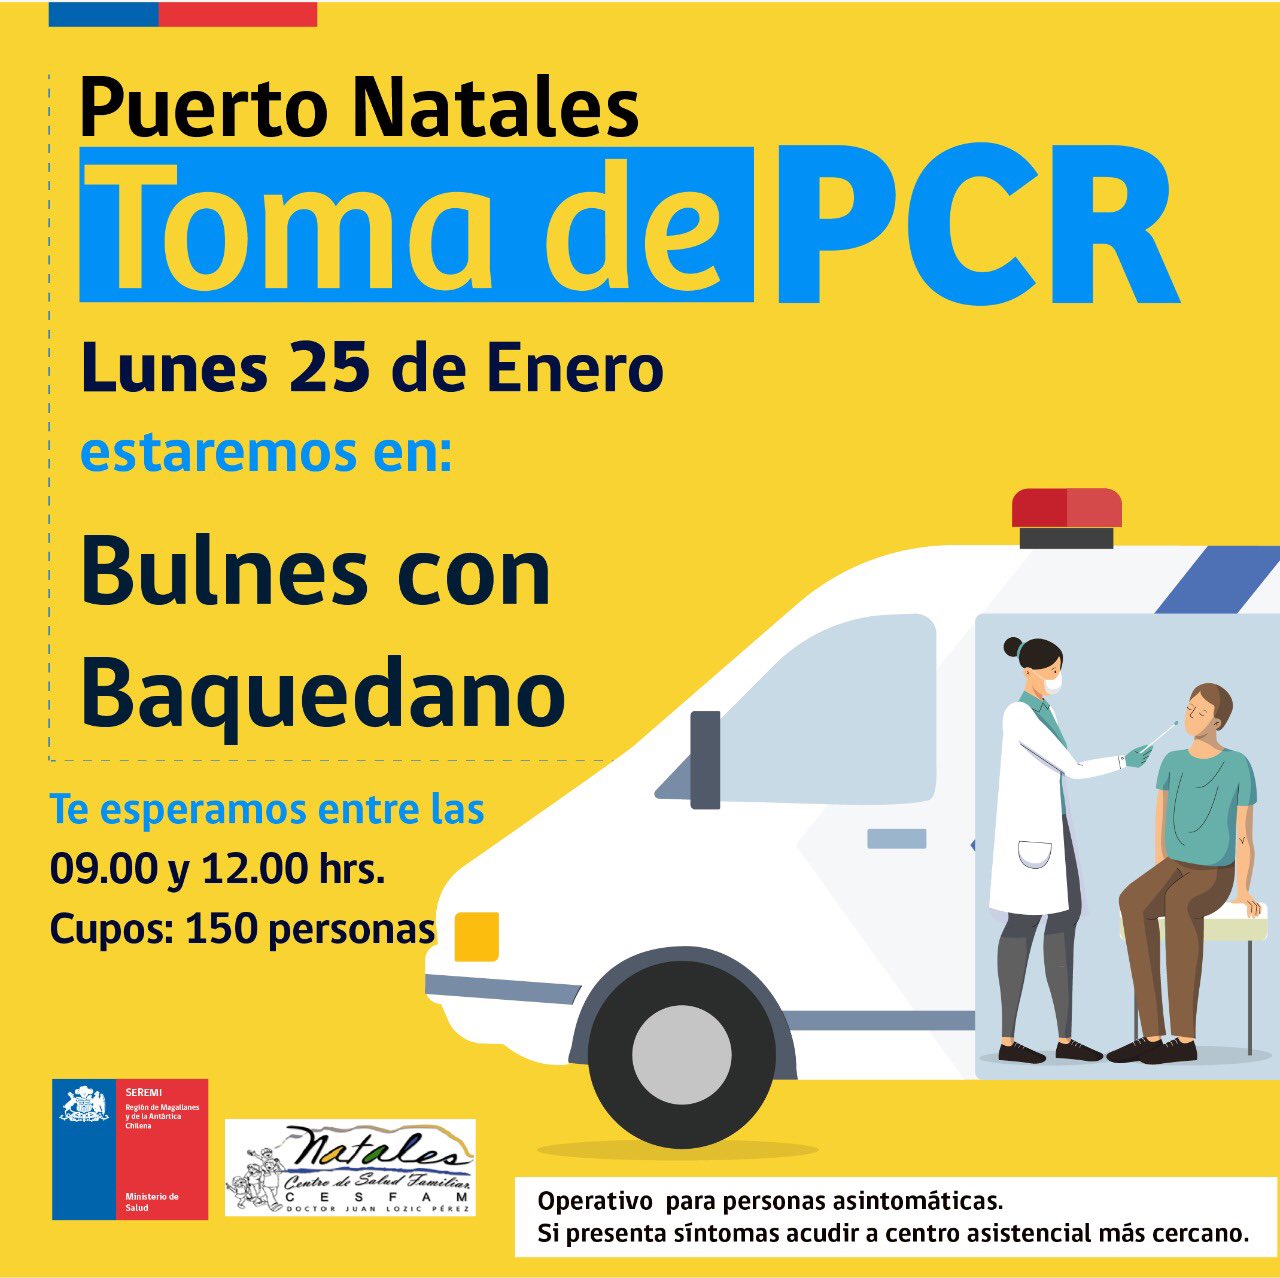 Toma de PCR en Punta Arenas y Natales se realiza hoy lunes